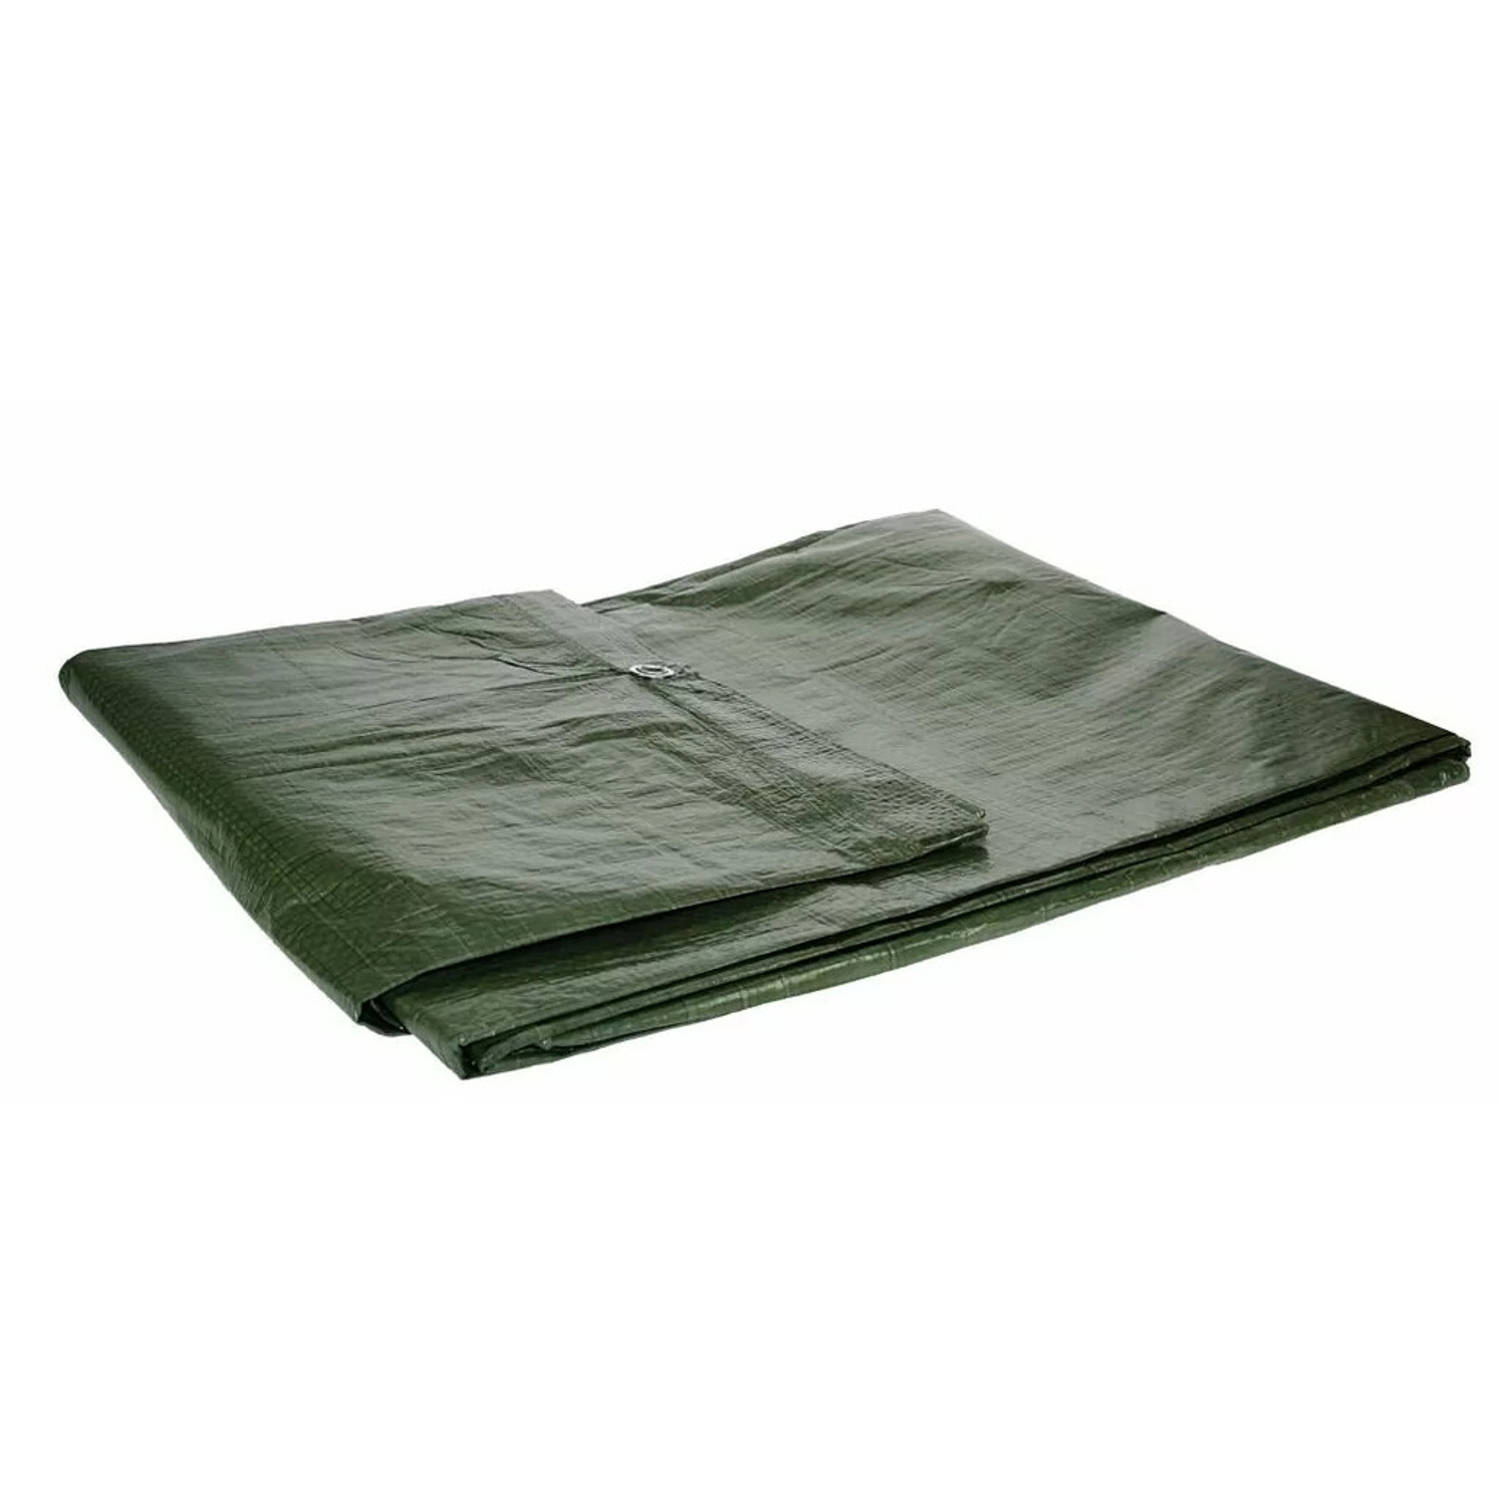 Afdekzeil/dekzeil groen waterdicht kunststof 90 gr/m2 - 200 x 400 cm - Afdekzeilen